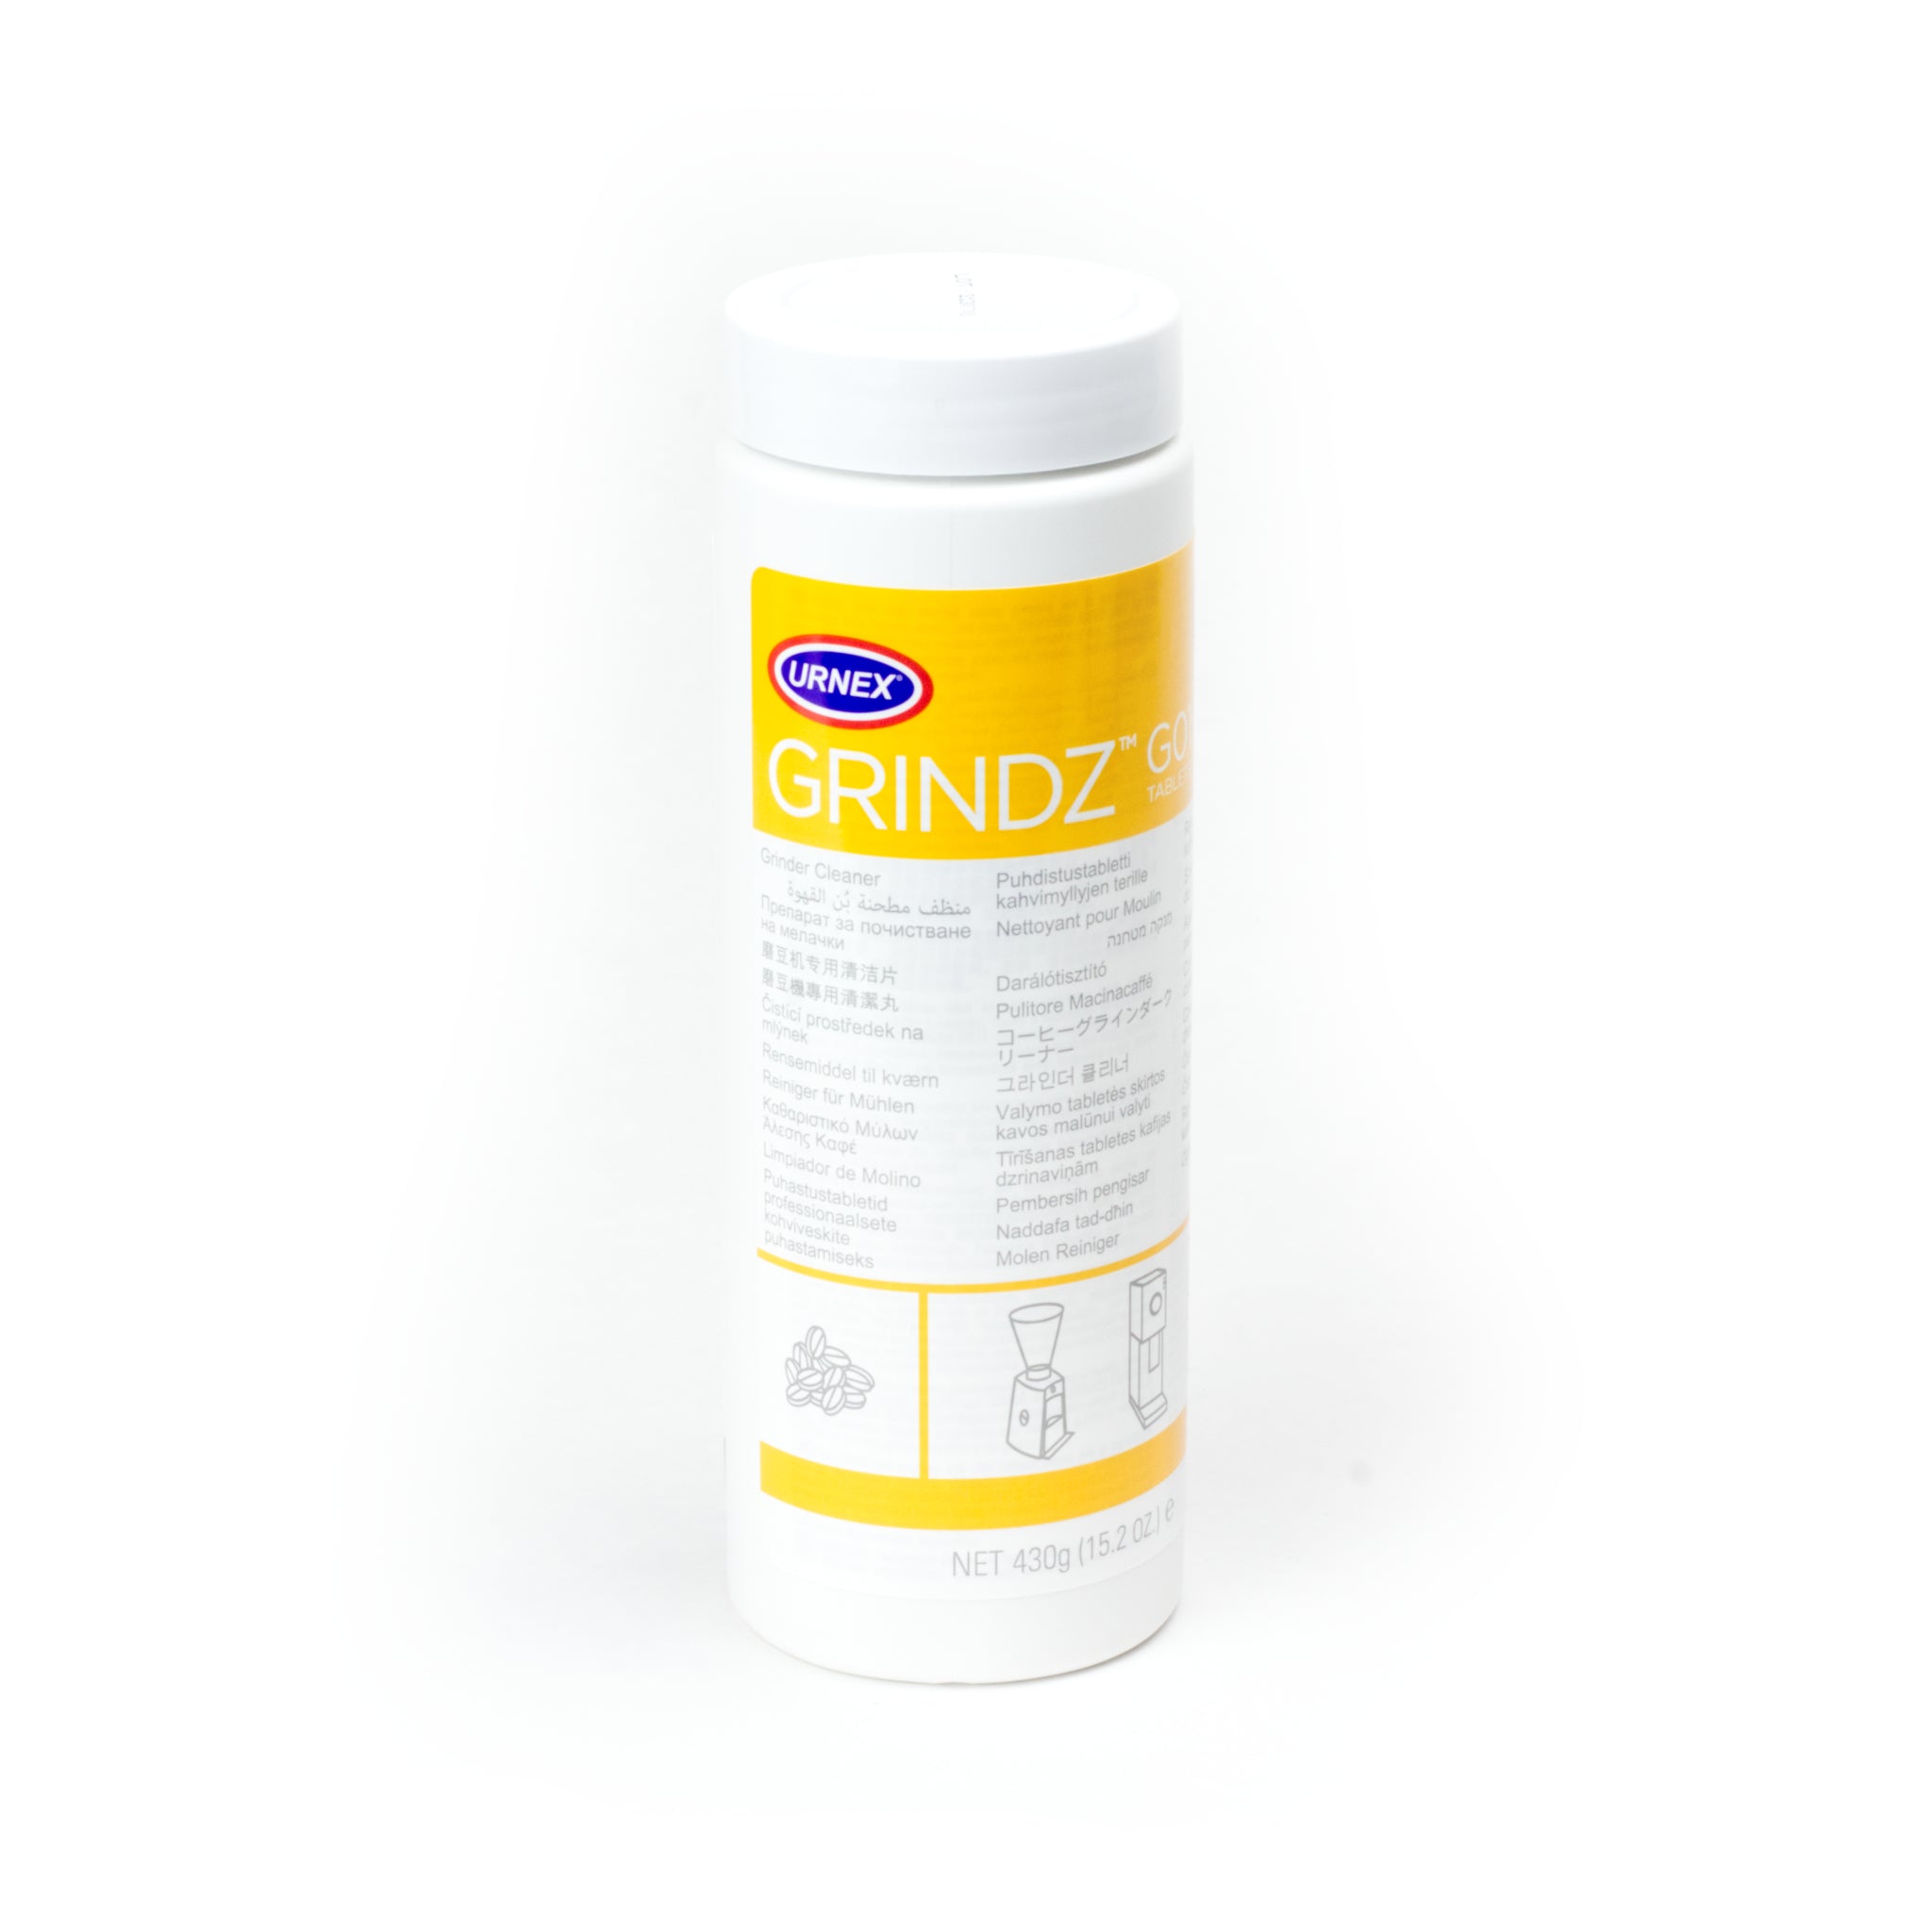 Produktbild Urnex Grindz Kaffeemühlen-Reiniger. Weiße runde Verpackung mit gelb-weißem Etikett, Urnex-Logo und schwarzer Schrift.